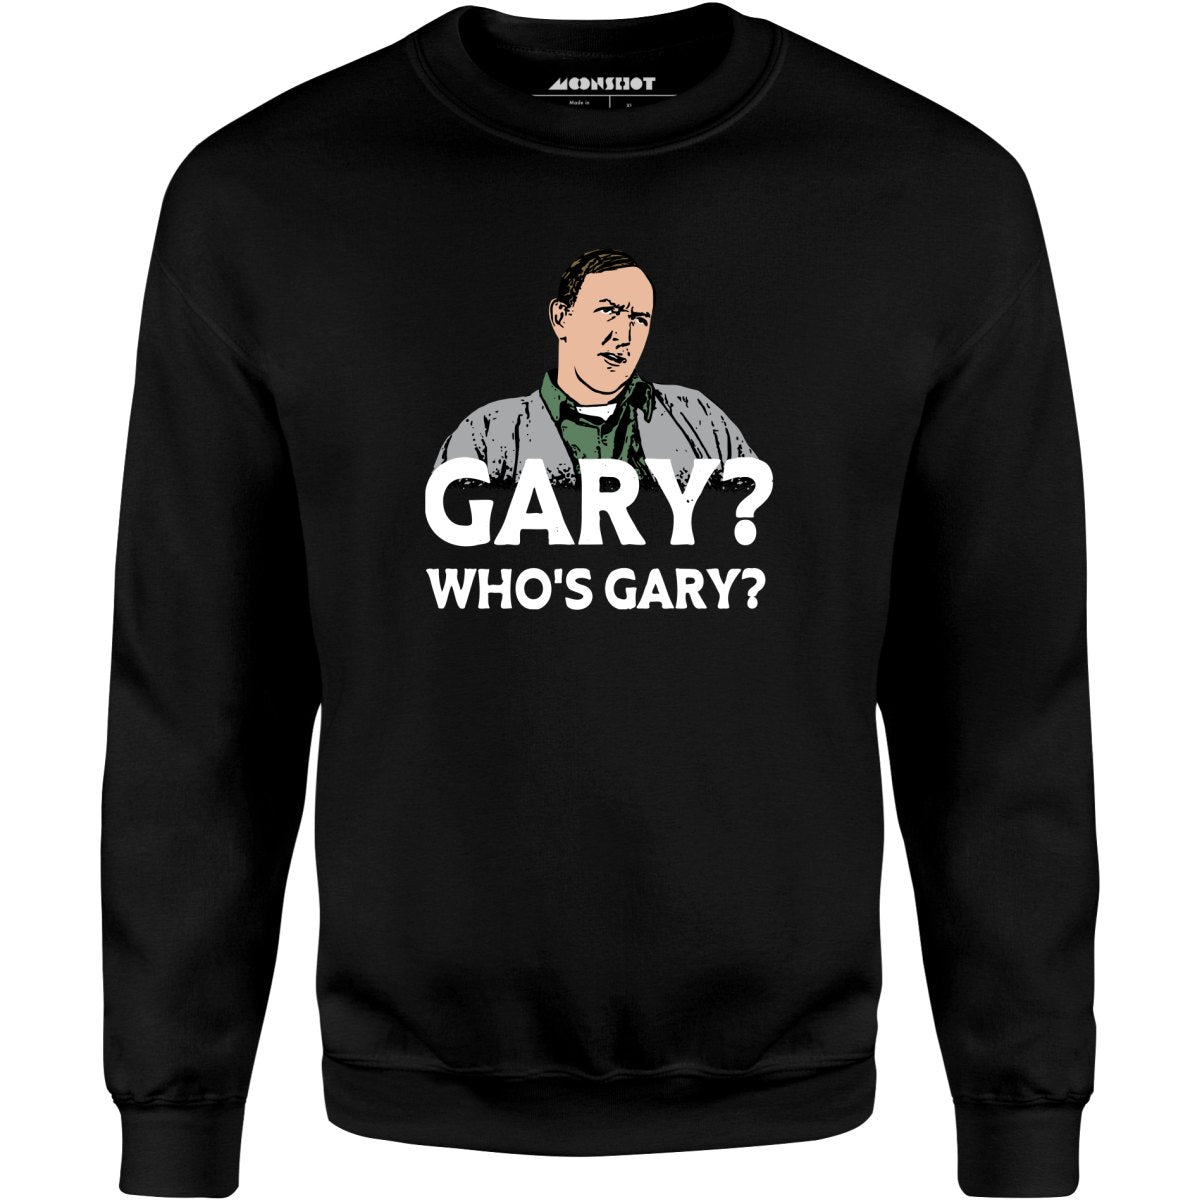 Gary? Who's Gary? - Unisex Sweatshirt